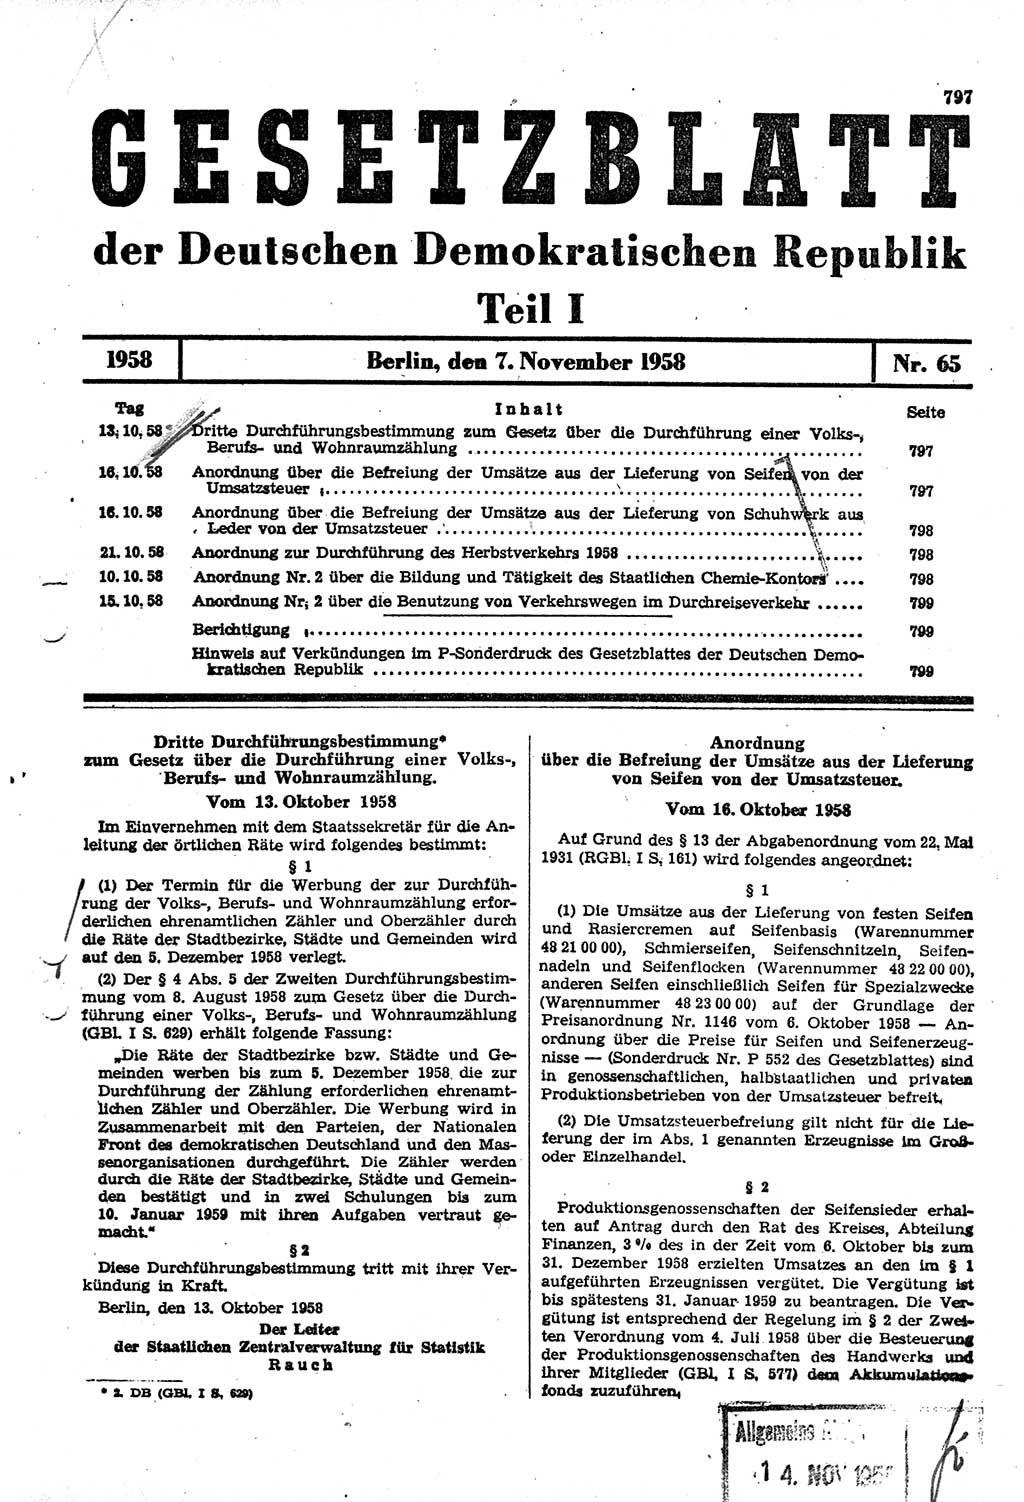 Gesetzblatt (GBl.) der Deutschen Demokratischen Republik (DDR) Teil Ⅰ 1958, Seite 797 (GBl. DDR Ⅰ 1958, S. 797)